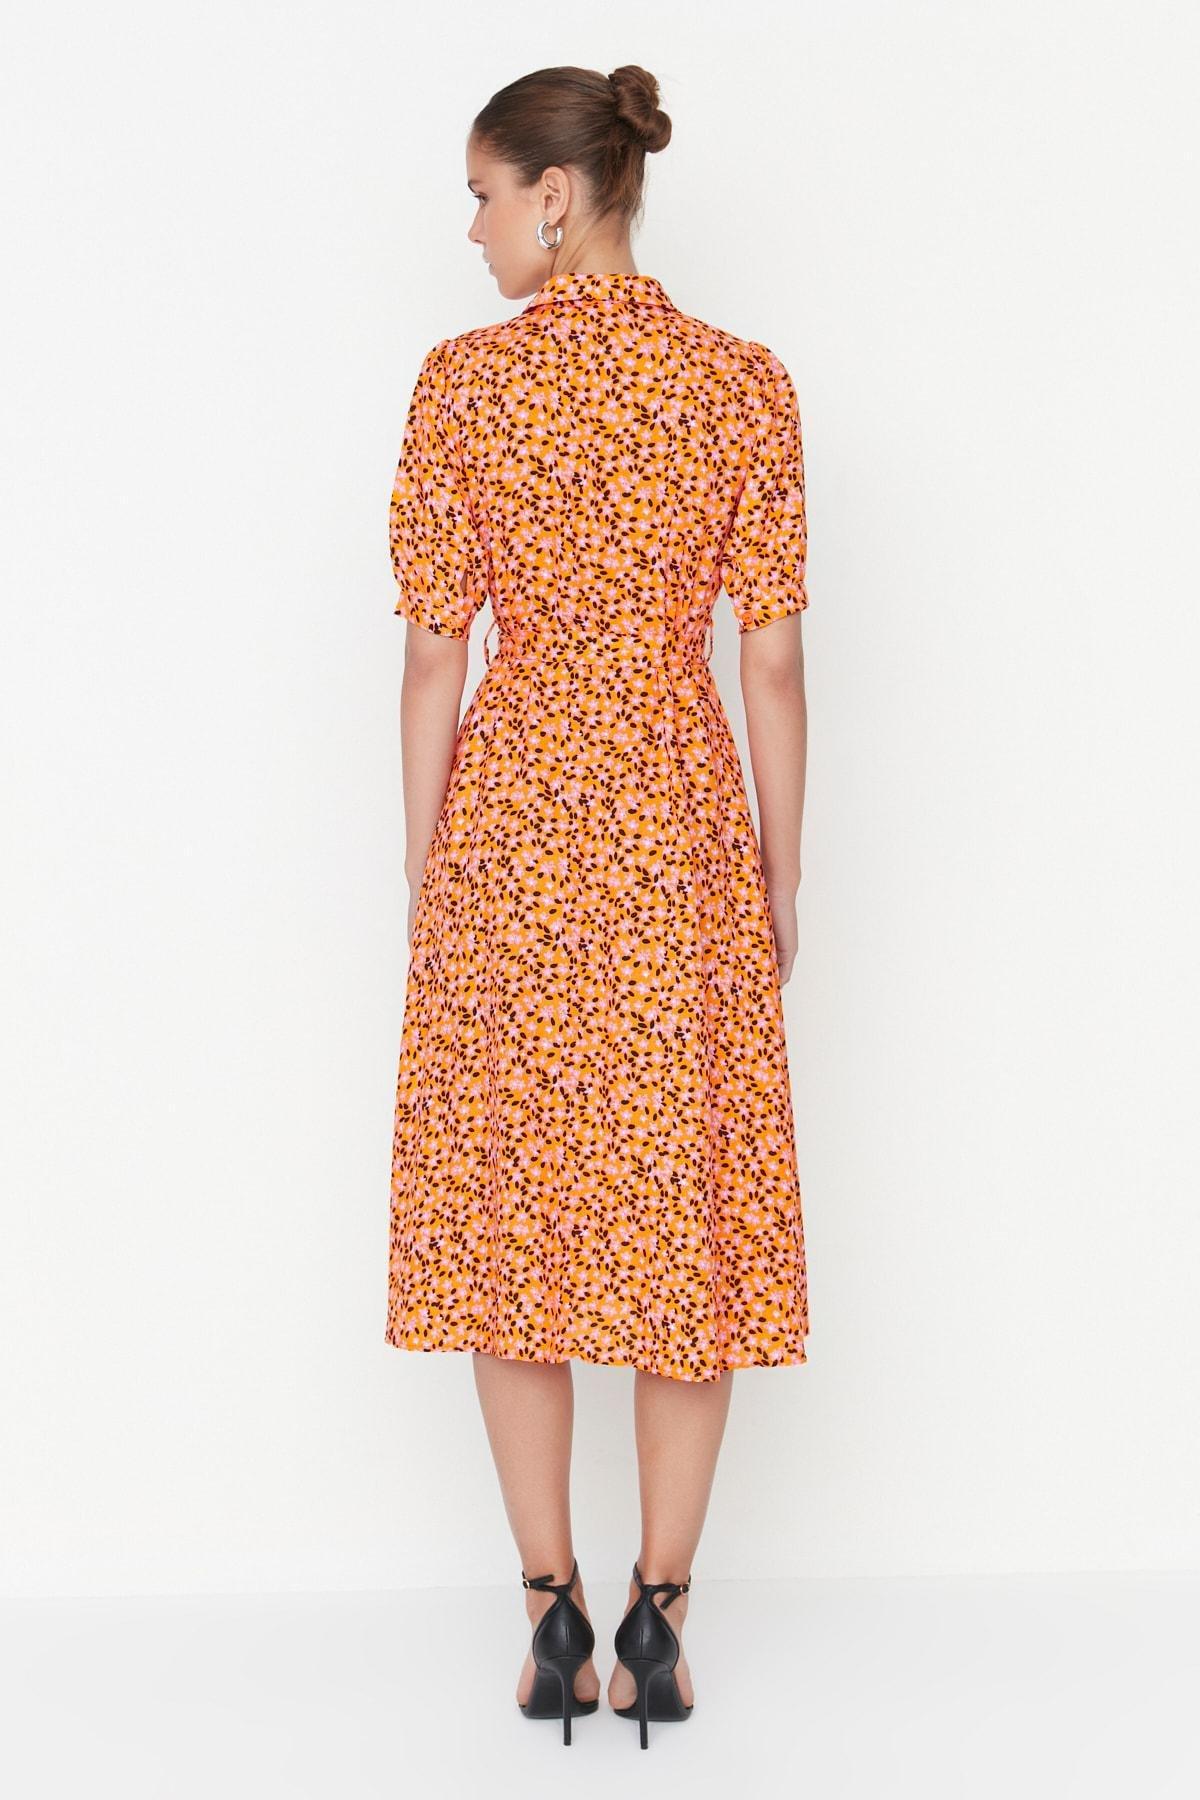 Trendyol - Orange Floral Shirt Dress